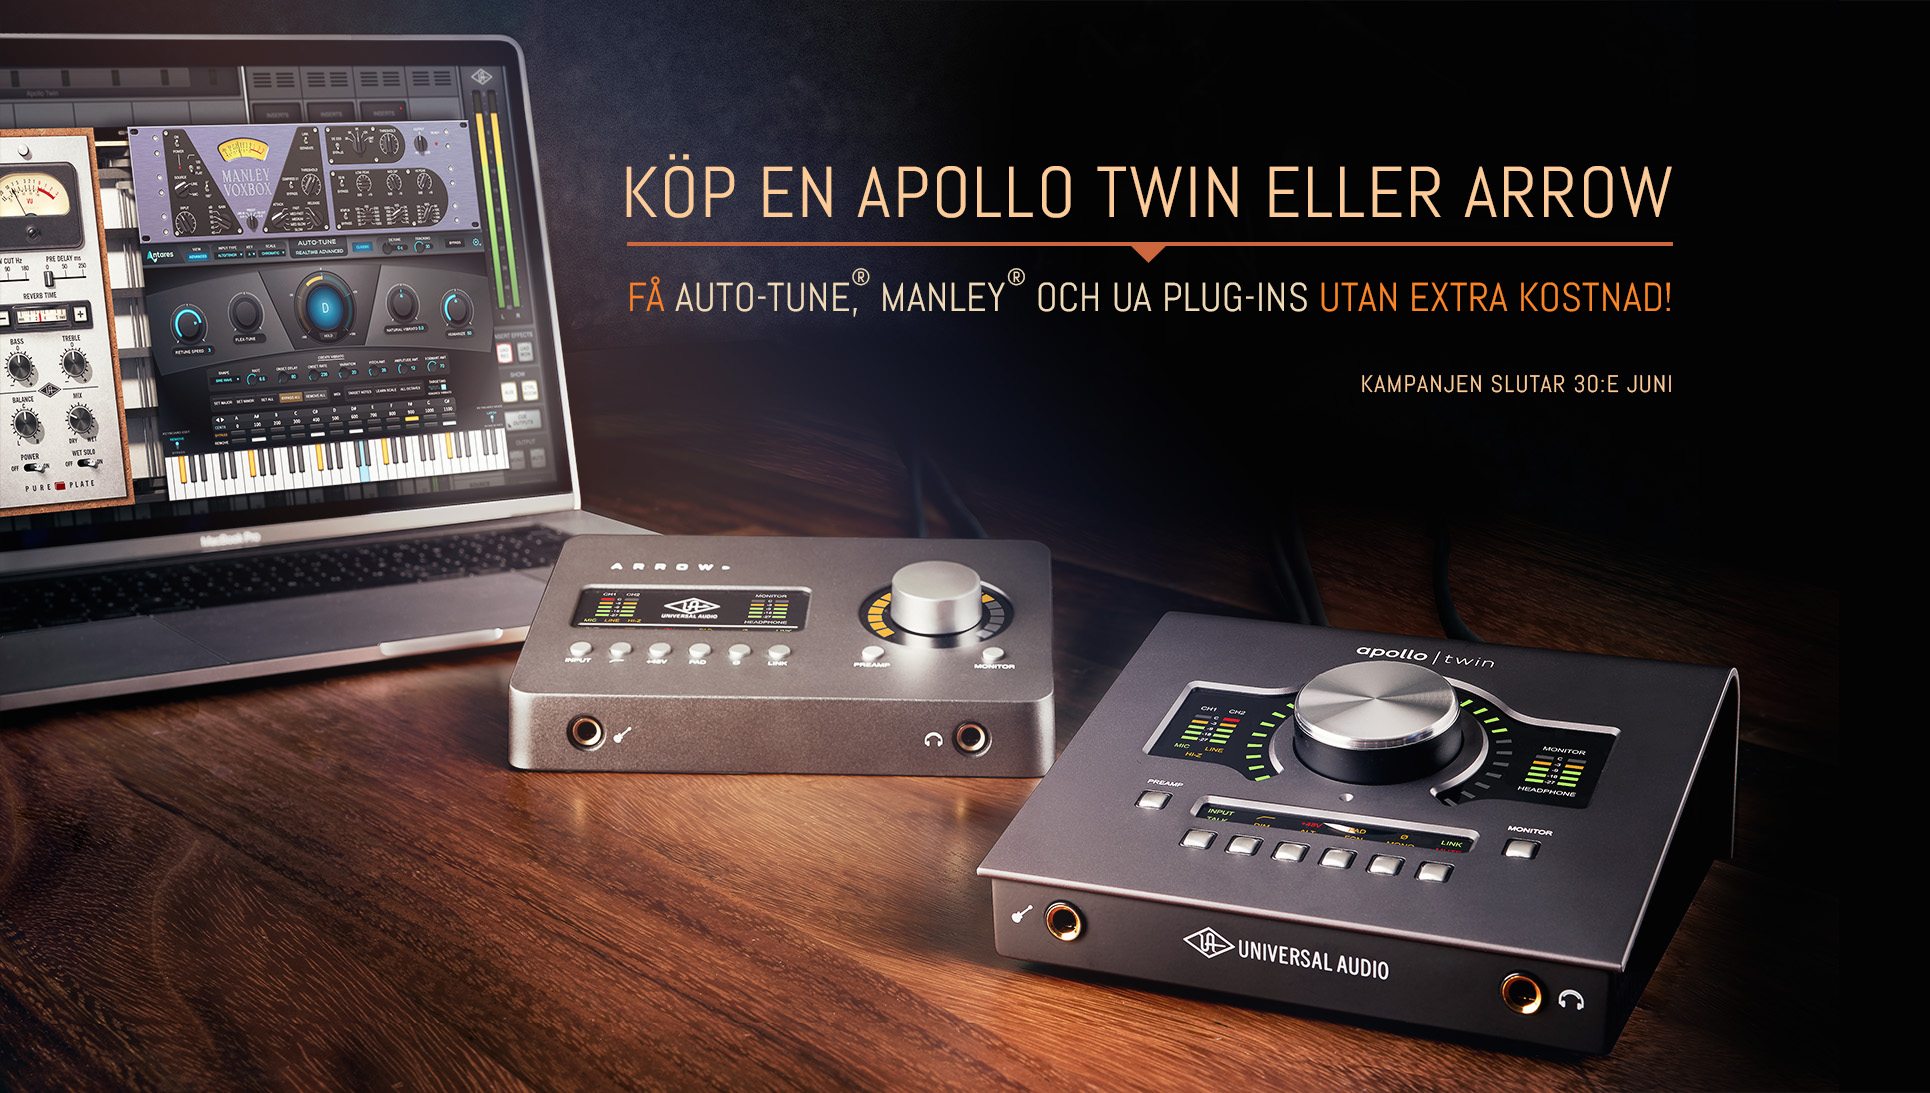 Universal Audio kampanj – Köp Apollo Twin eller Arrow och få Auto-Tune, Manley och UA plug-ins utan extra kostnad